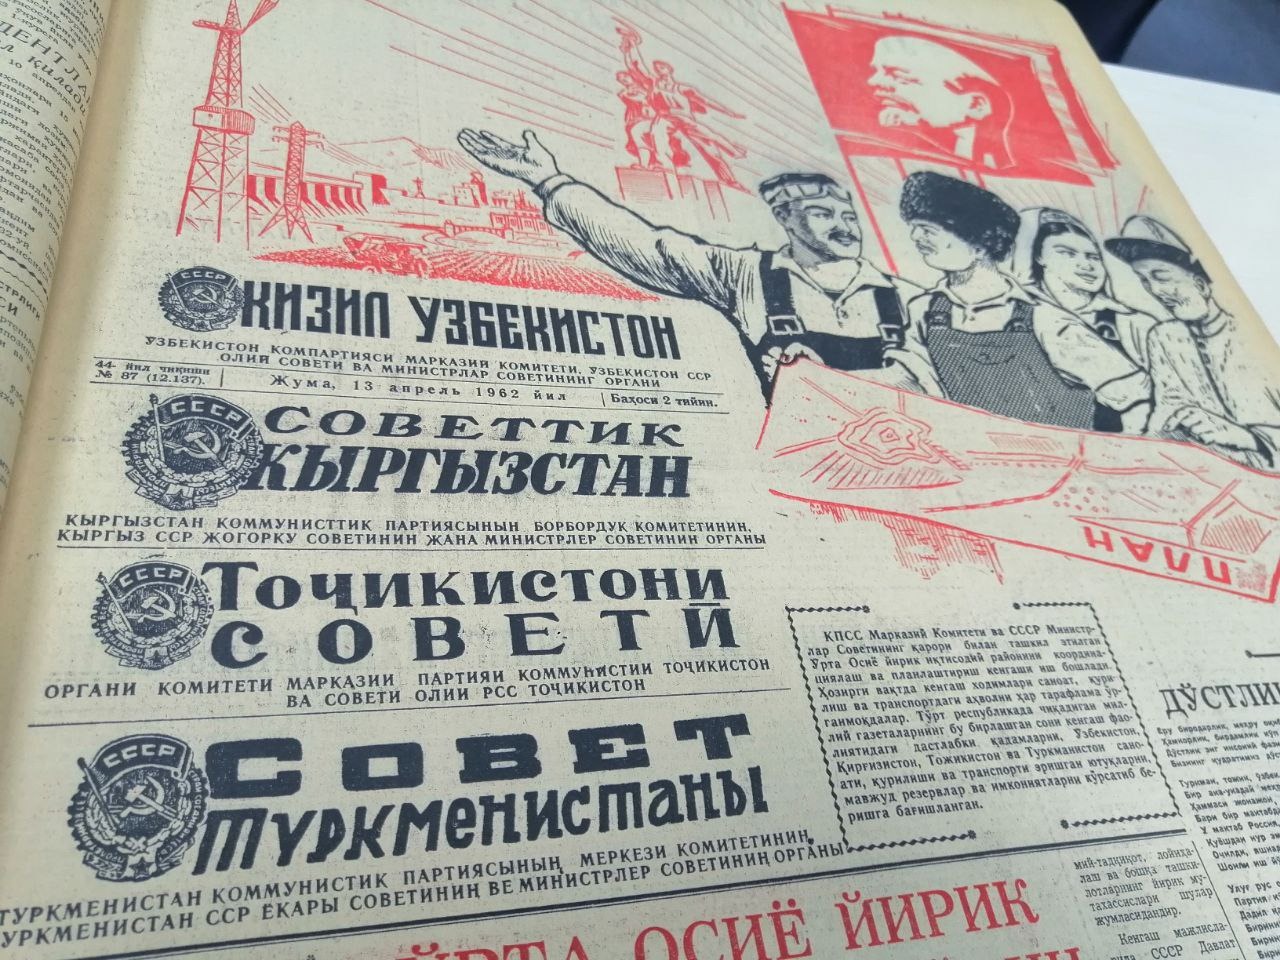 “Qizil O‘zbekiston” gazetasining 1962-yil 13-aprel soni muqovasi